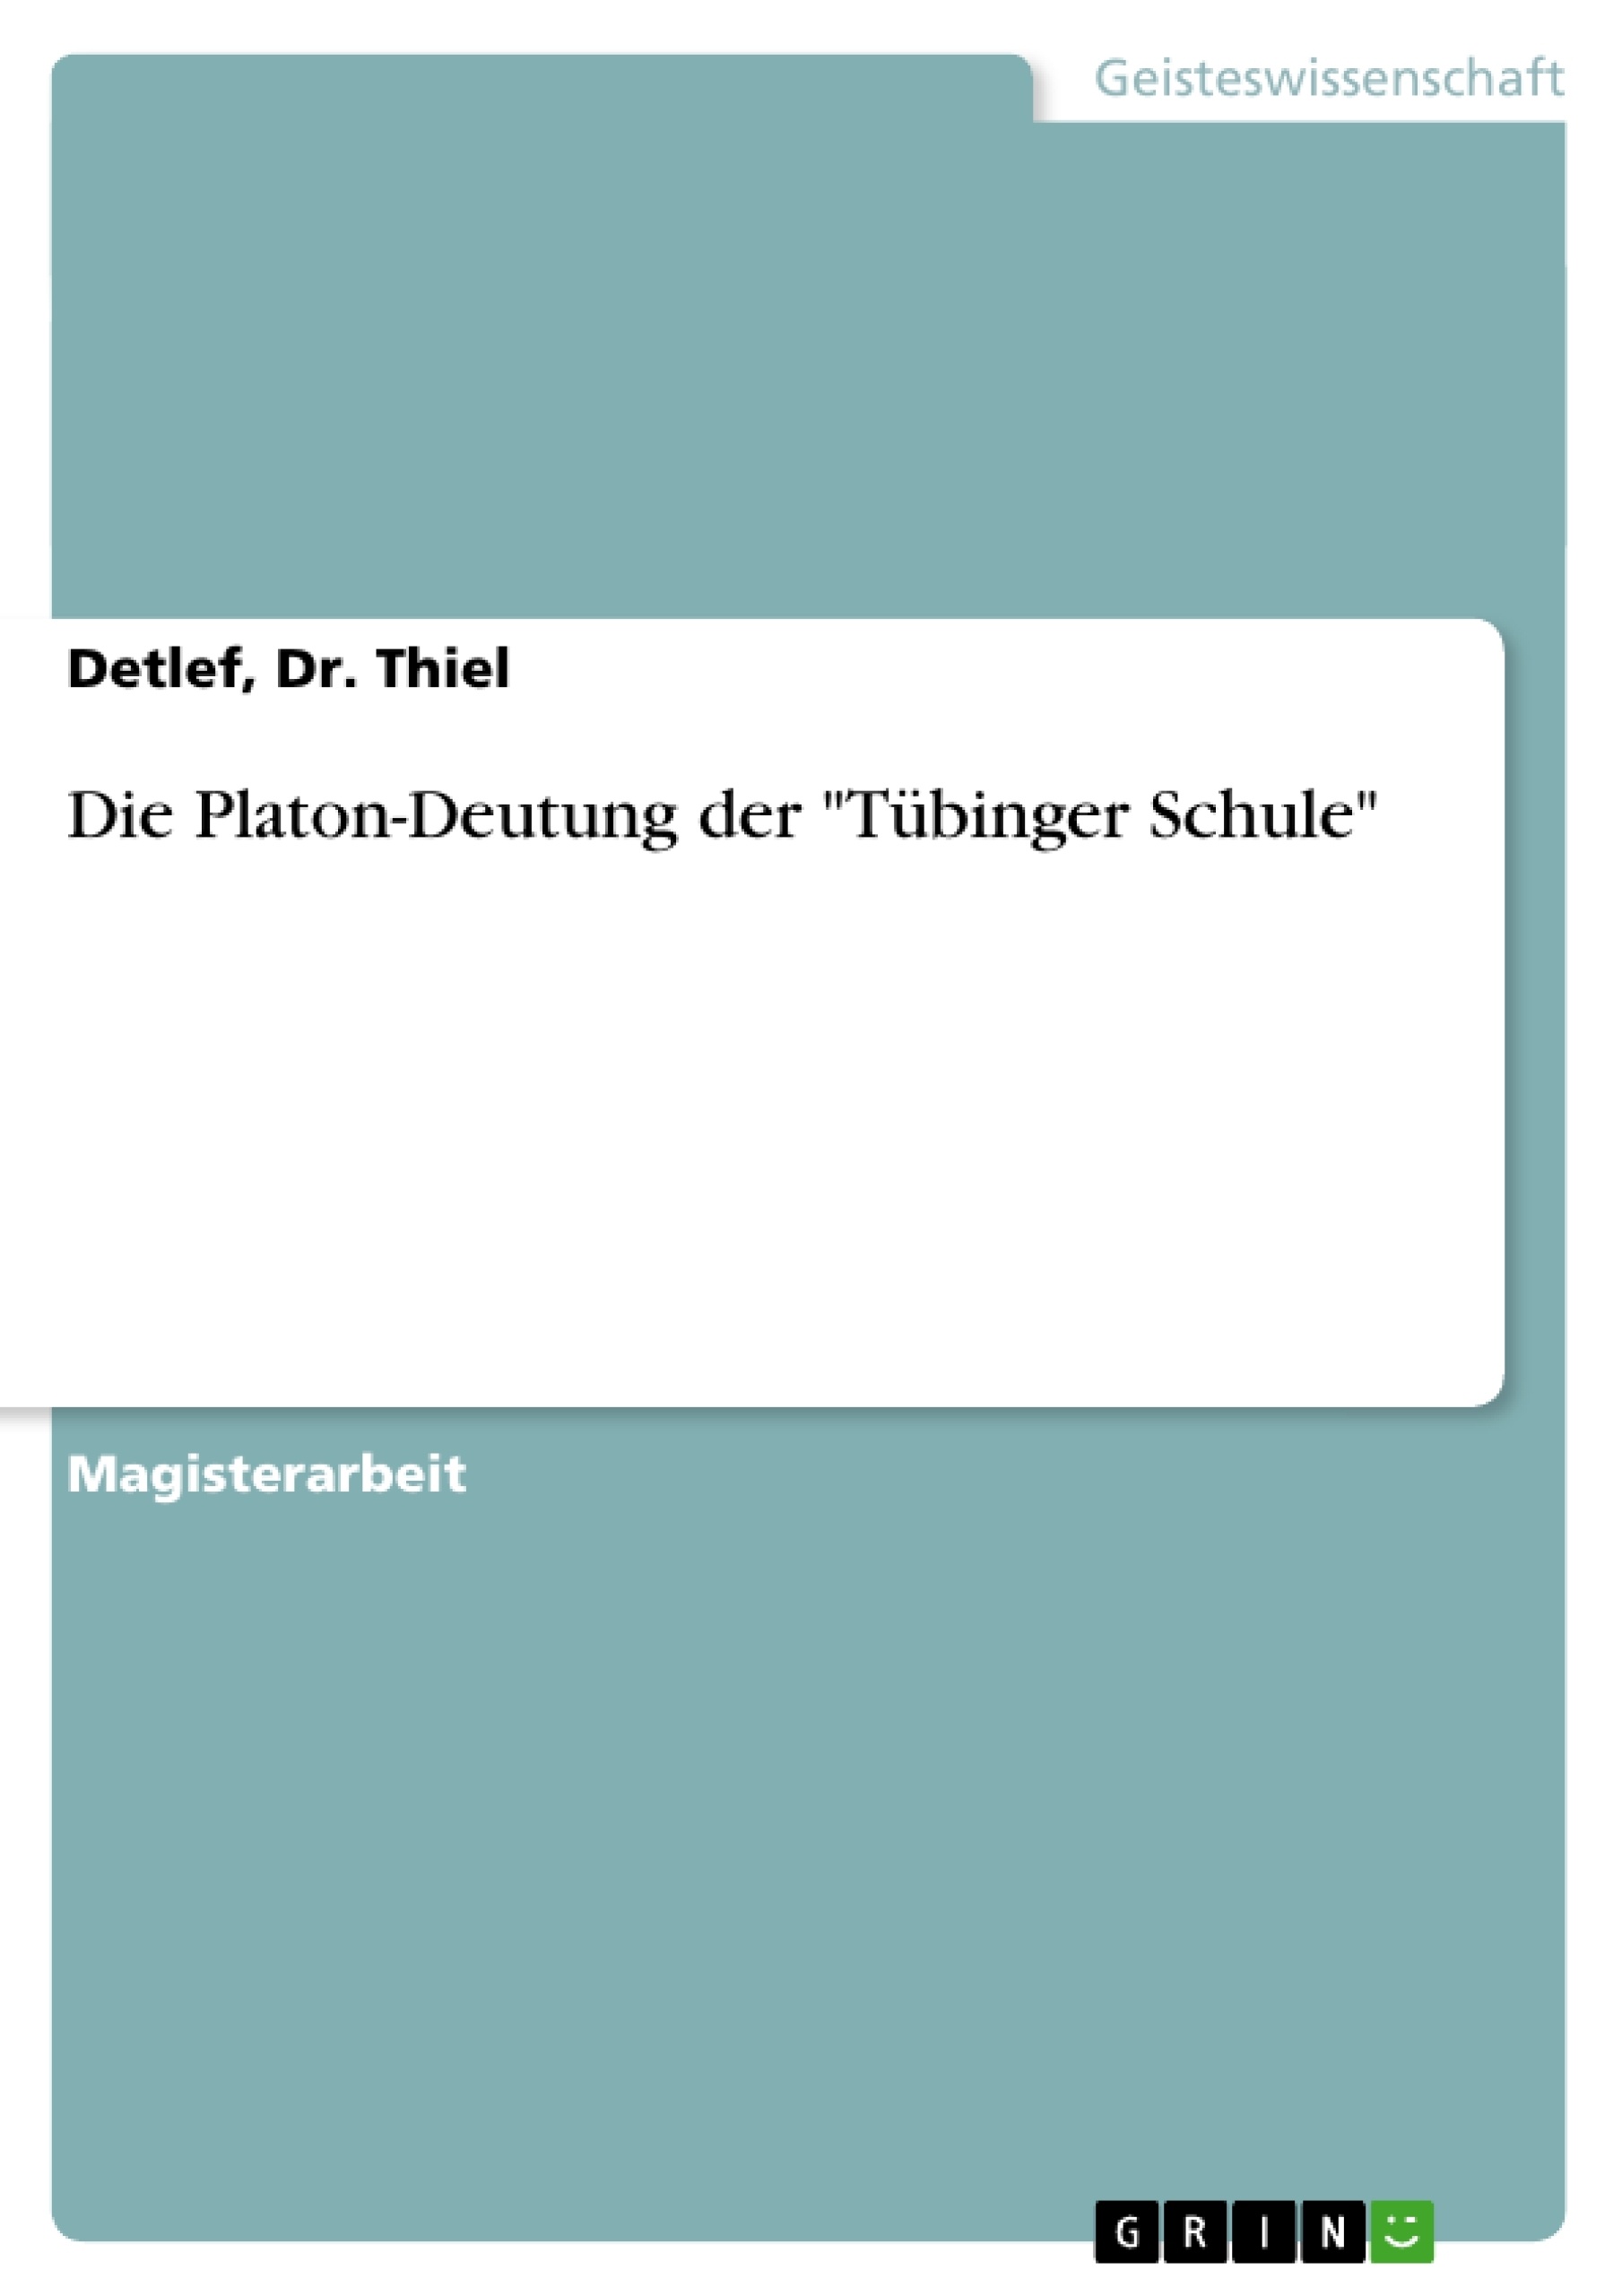 Title: Die Platon-Deutung der "Tübinger Schule"